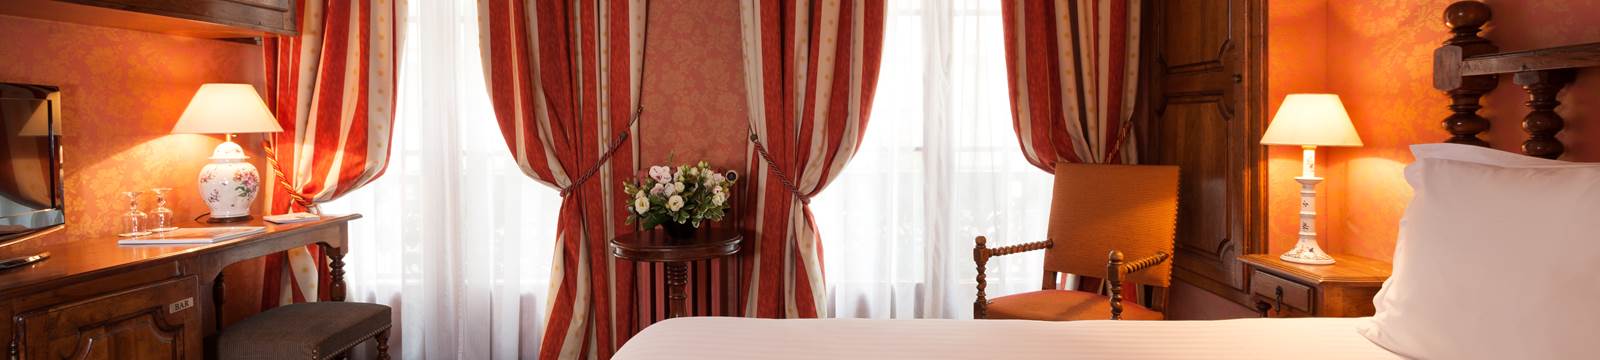 Chambres Classiques Hôtel Amarante Beau Manoir Paris